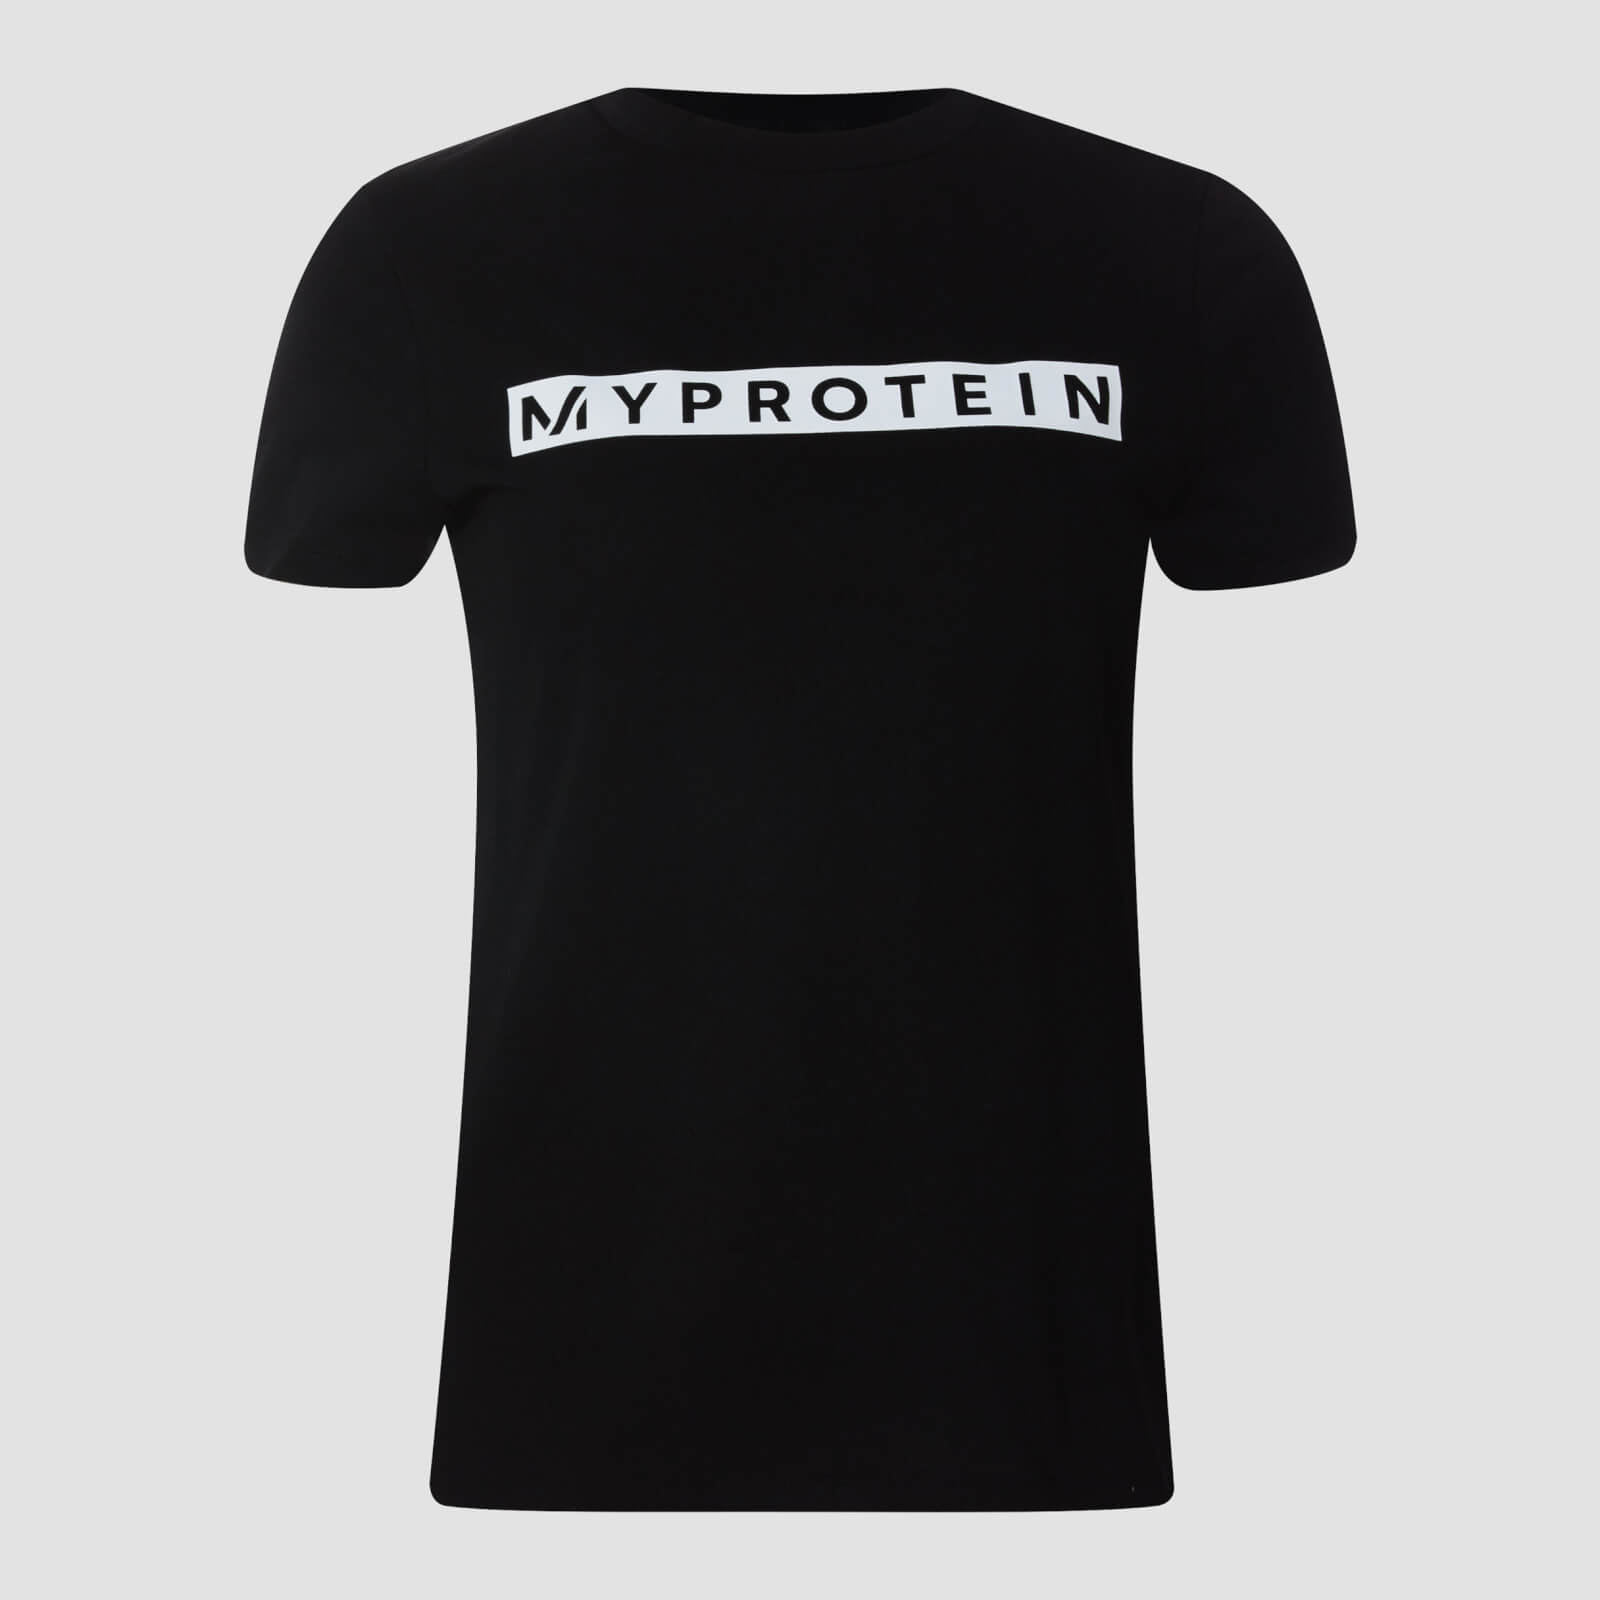 Myprotein T-shirt Originals da donna - Nero - S